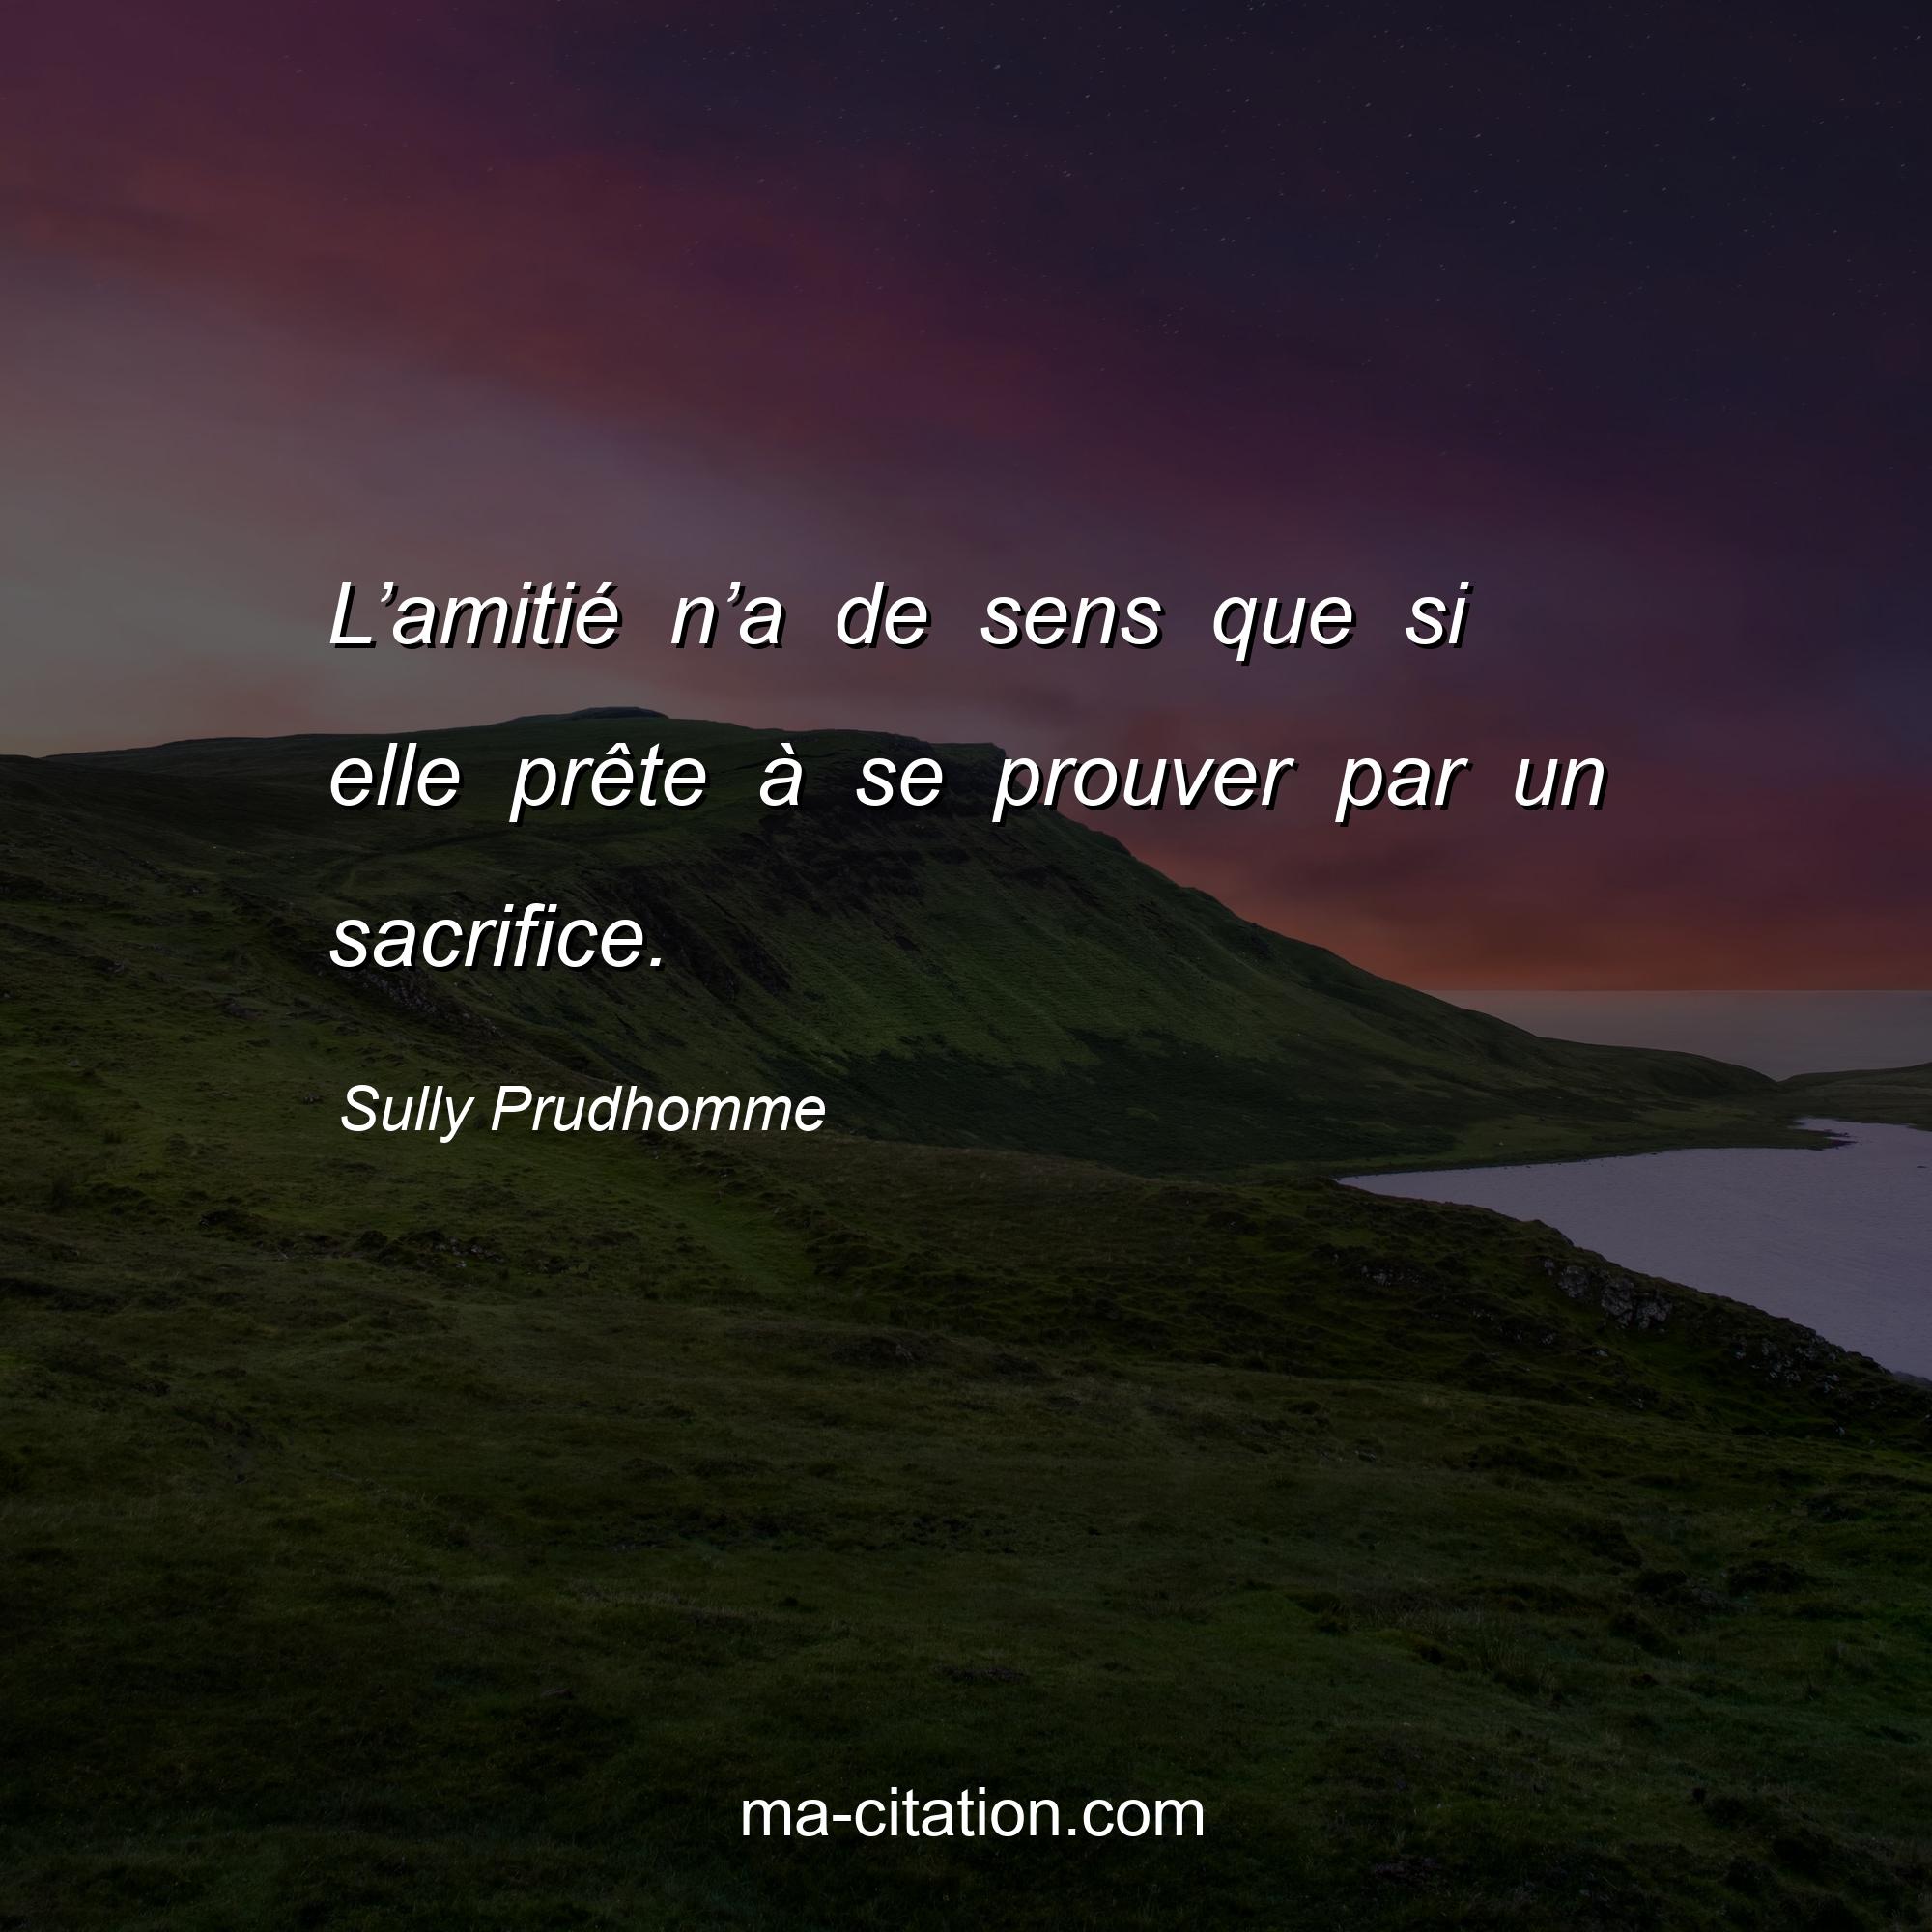 Sully Prudhomme : L’amitié n’a de sens que si elle prête à se prouver par un sacrifice.